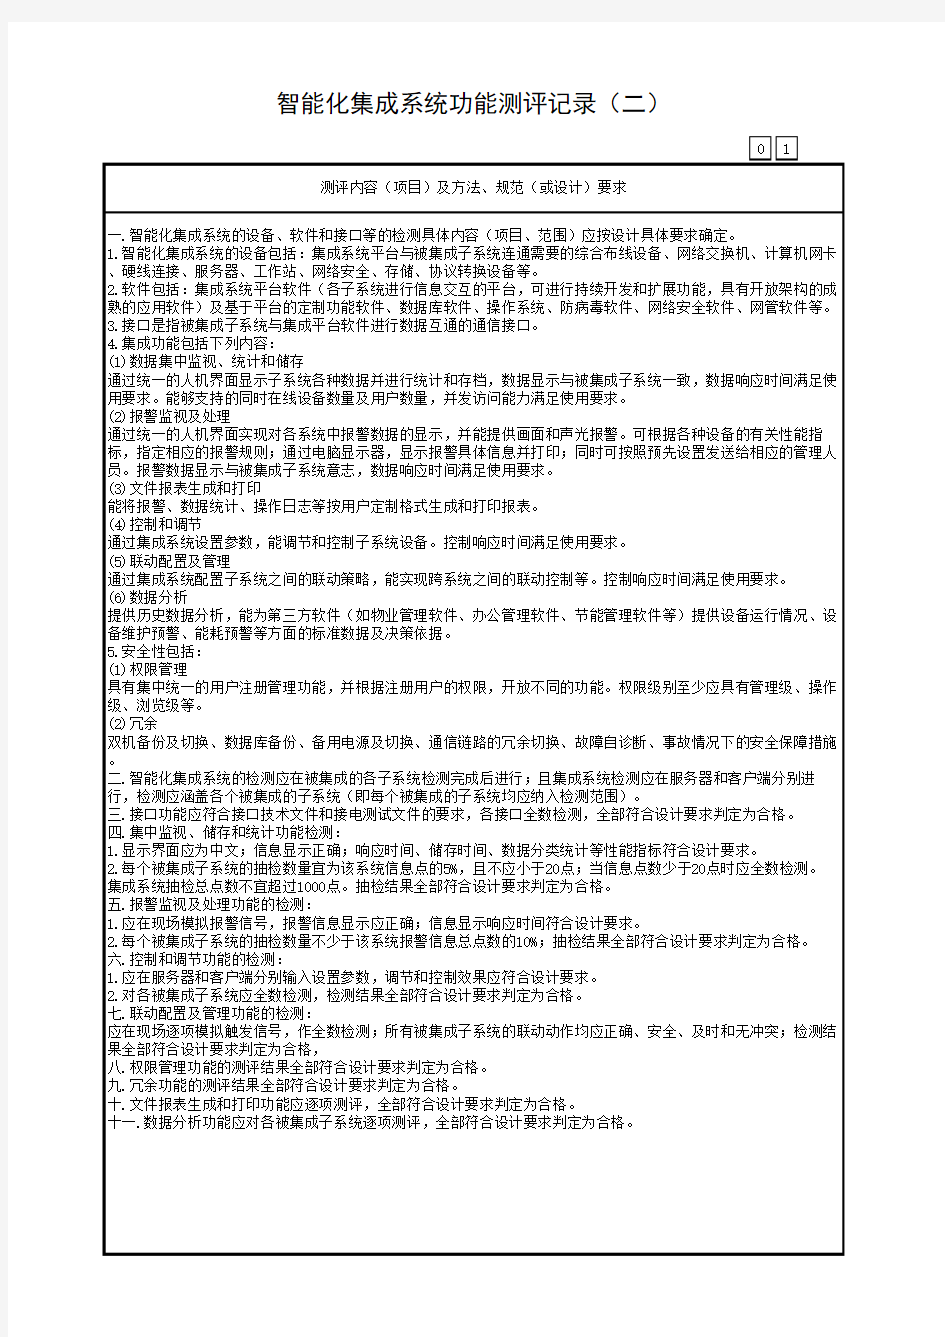 广东省建筑工程统一用表(2017版)智能化集成系统功能测评记录(二)